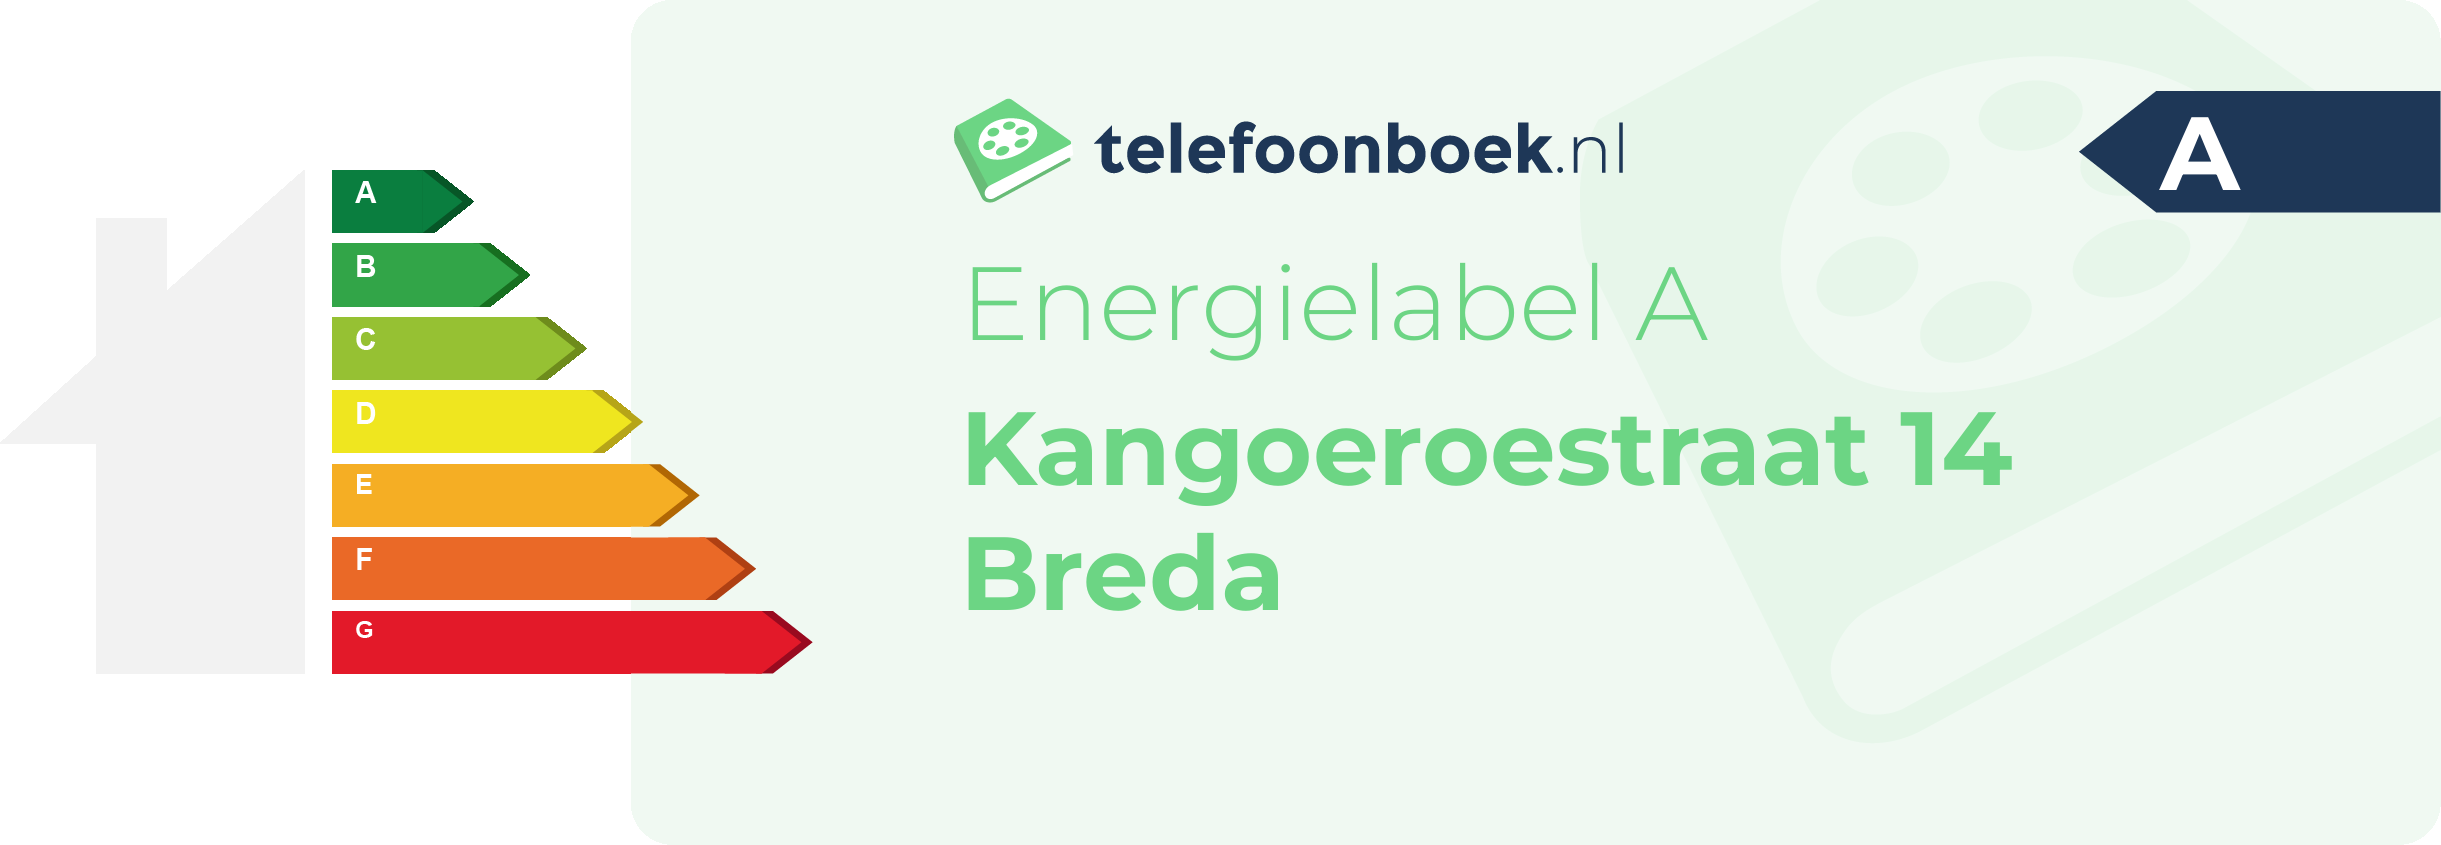 Energielabel Kangoeroestraat 14 Breda